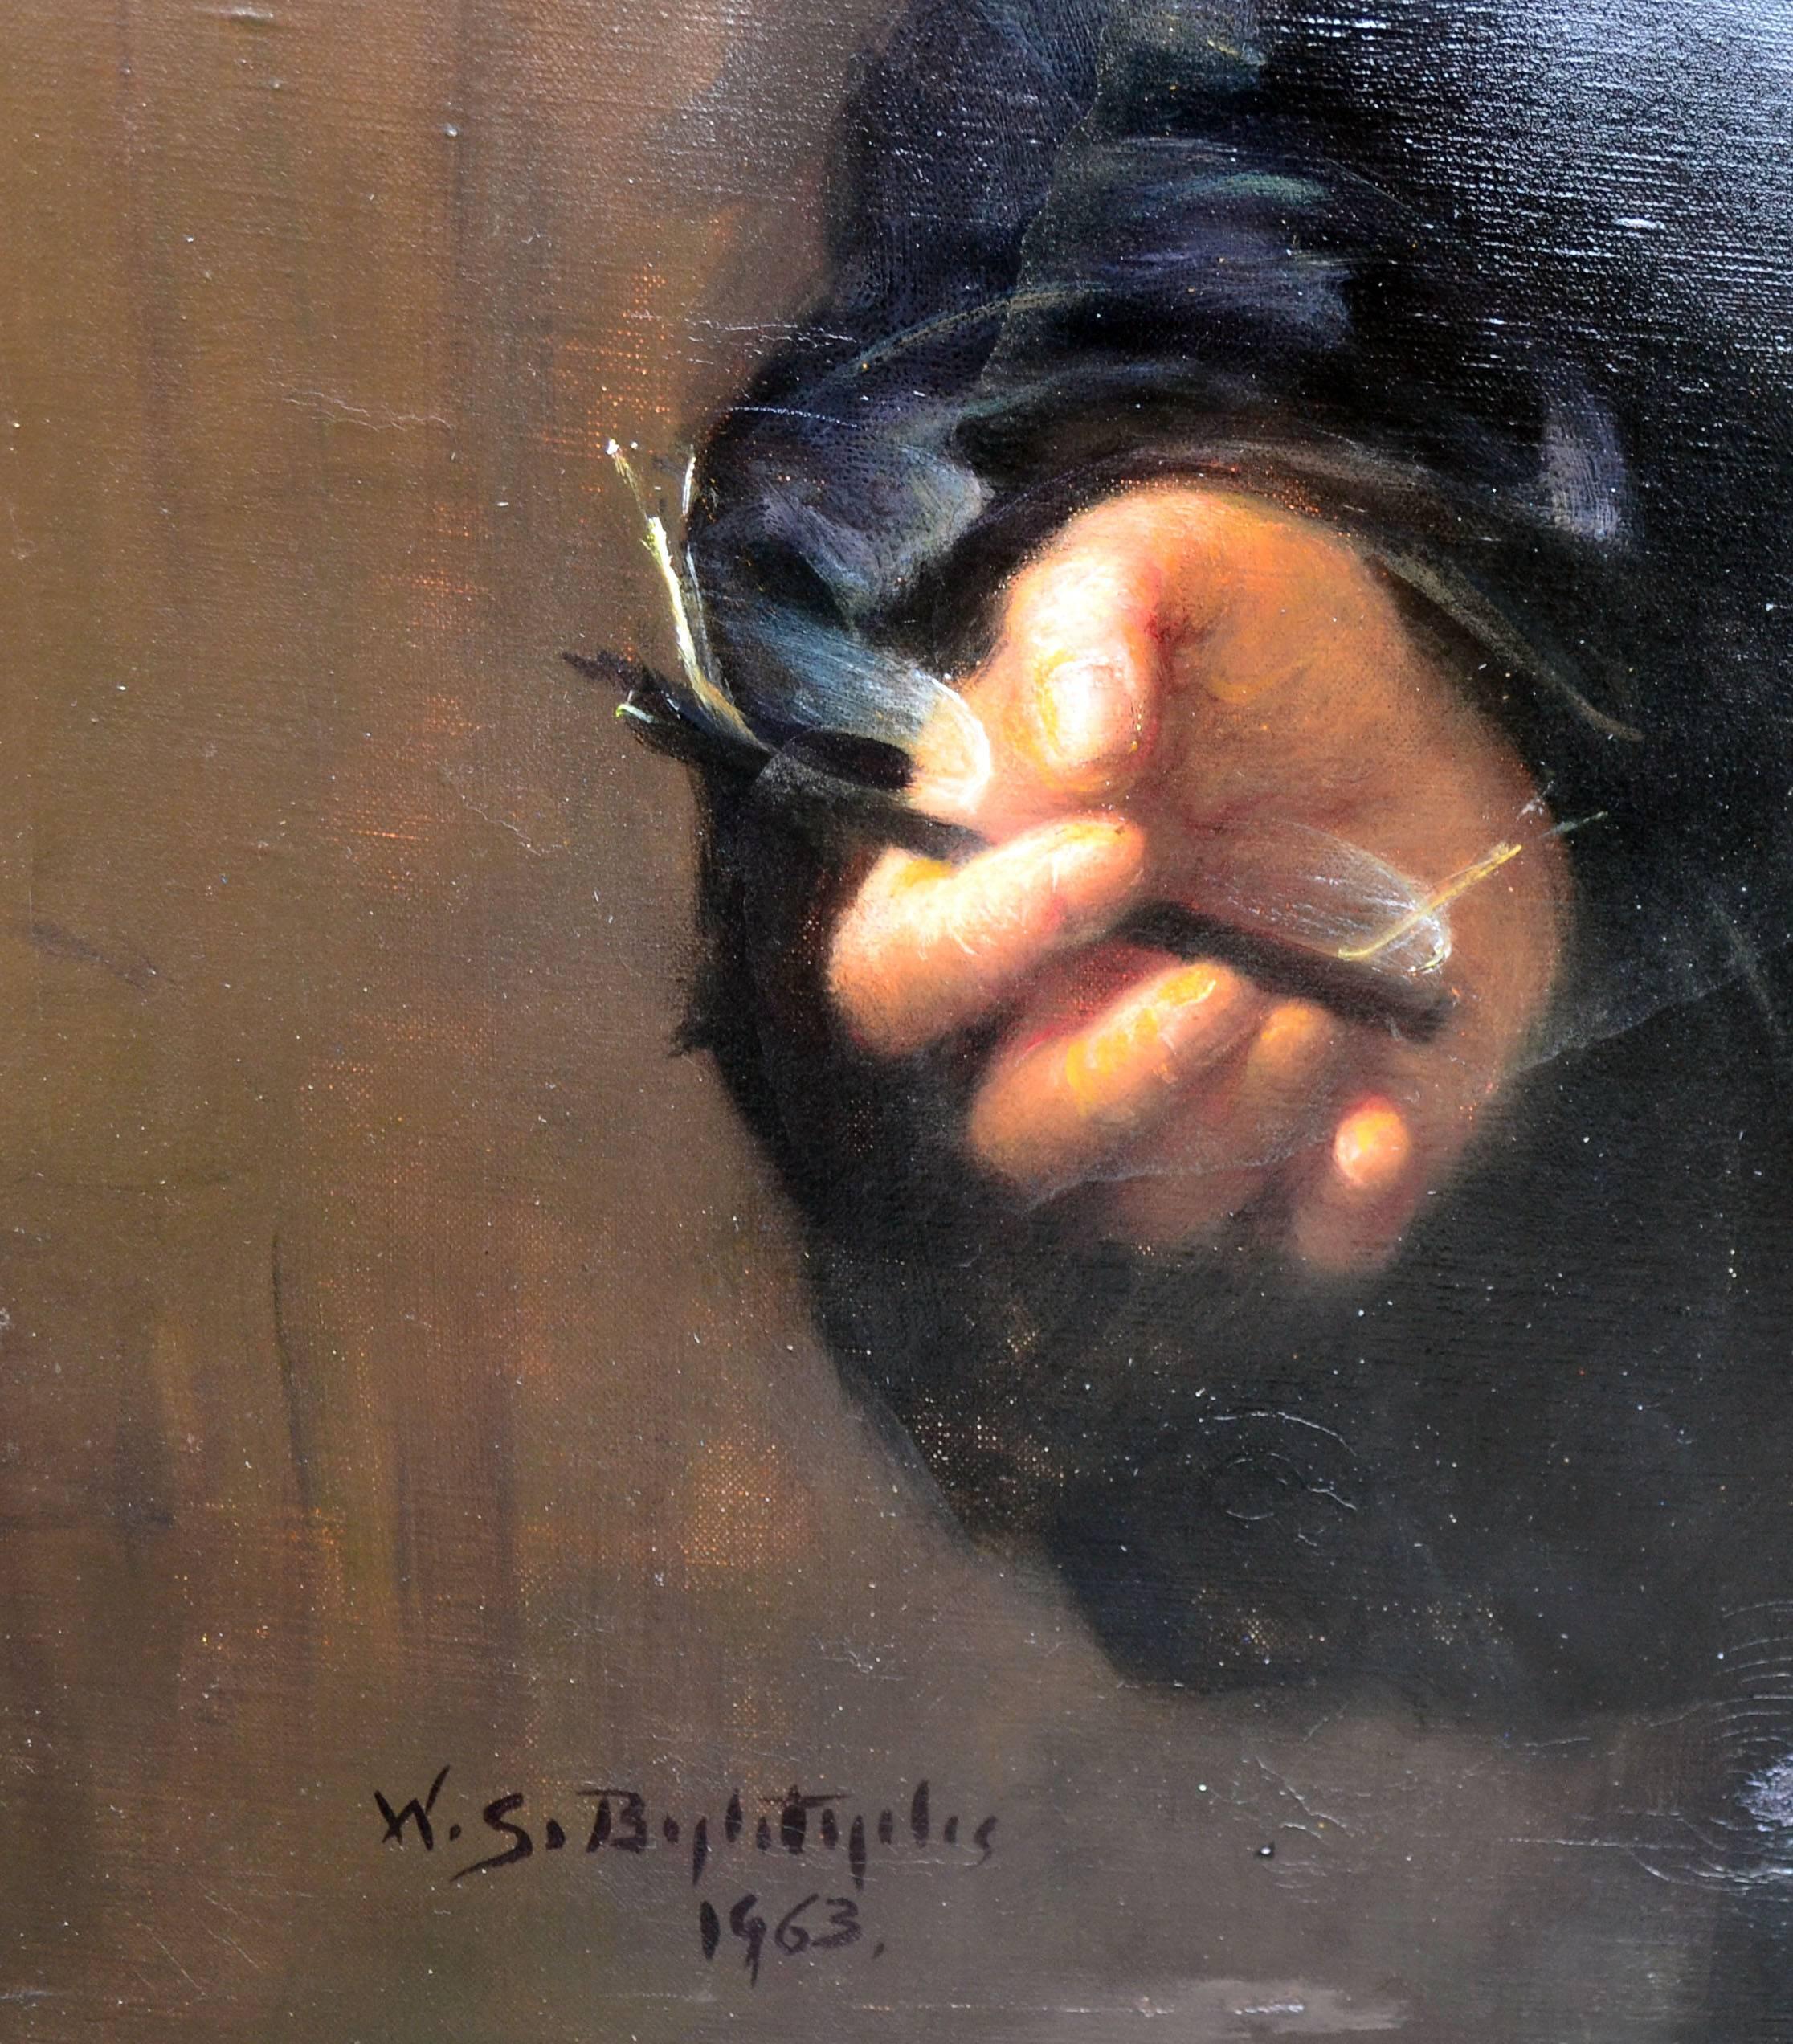 Portrait du milieu du siècle dernier de Raymond L. Hanson, portrait figuratif photoréaliste à grande échelle - Réalisme Painting par W.S. Bylityplis